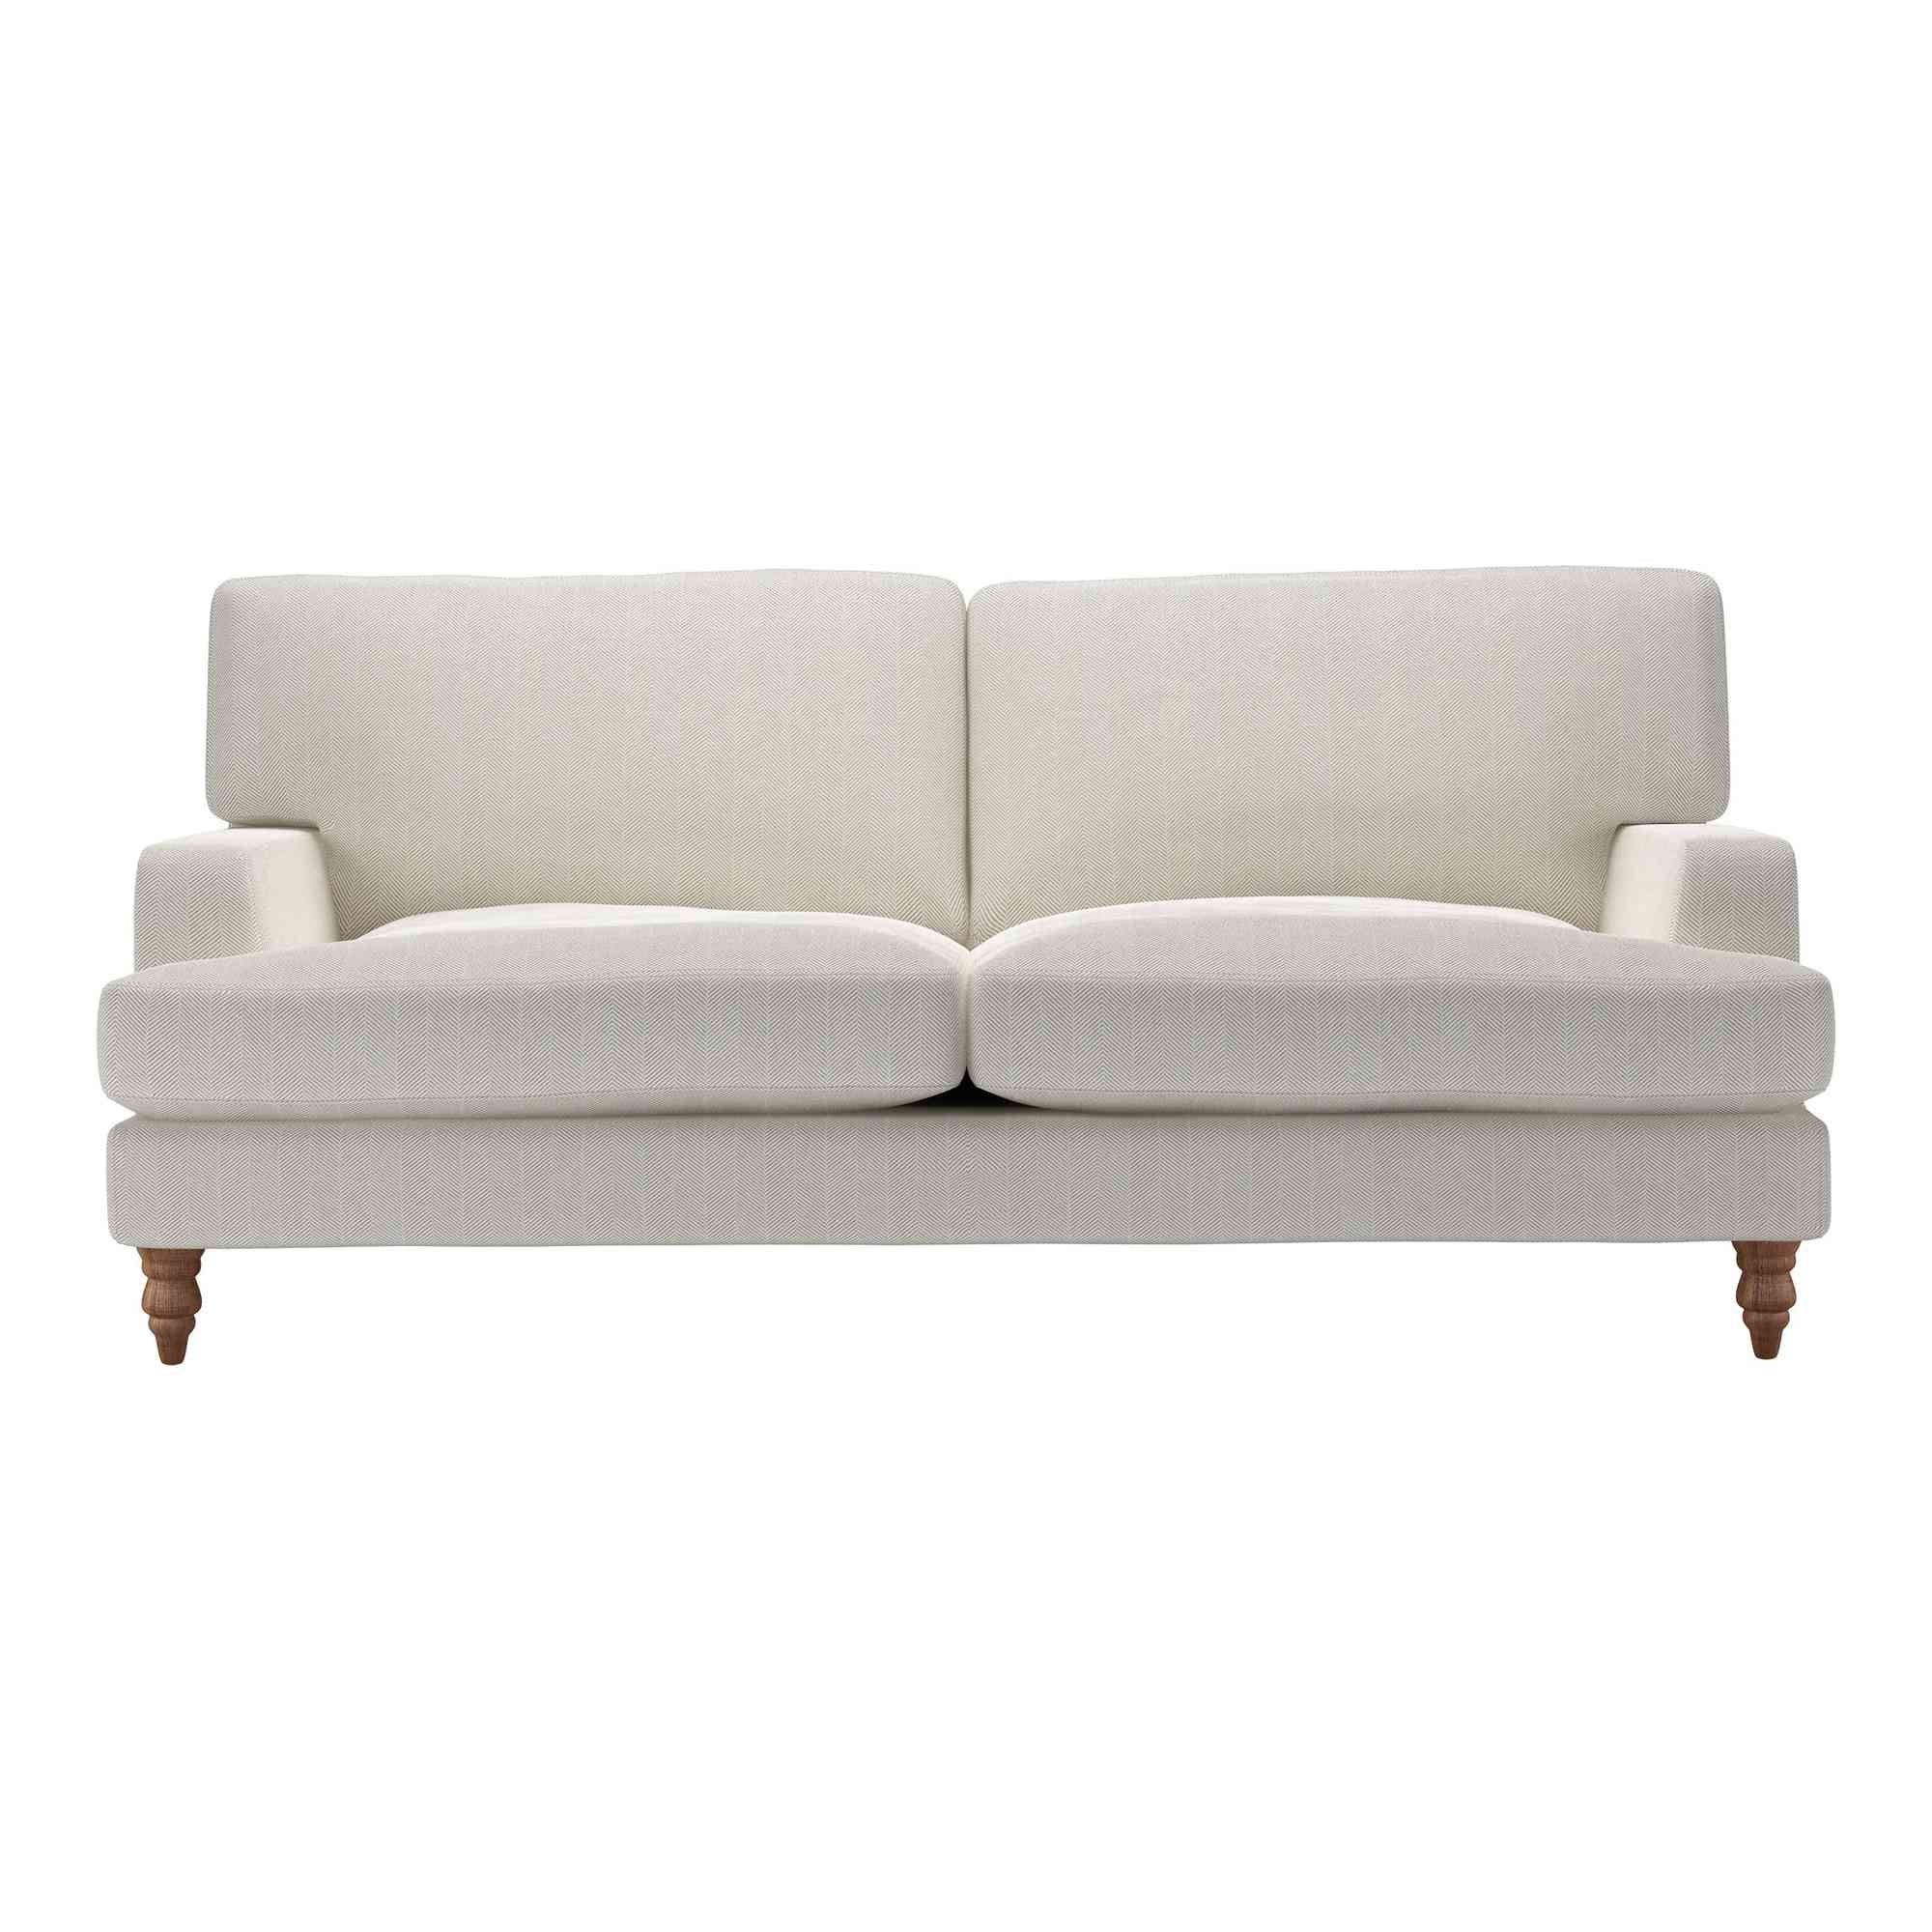 Isla Clay House Herringbone Weave Sofa - 3 Seater